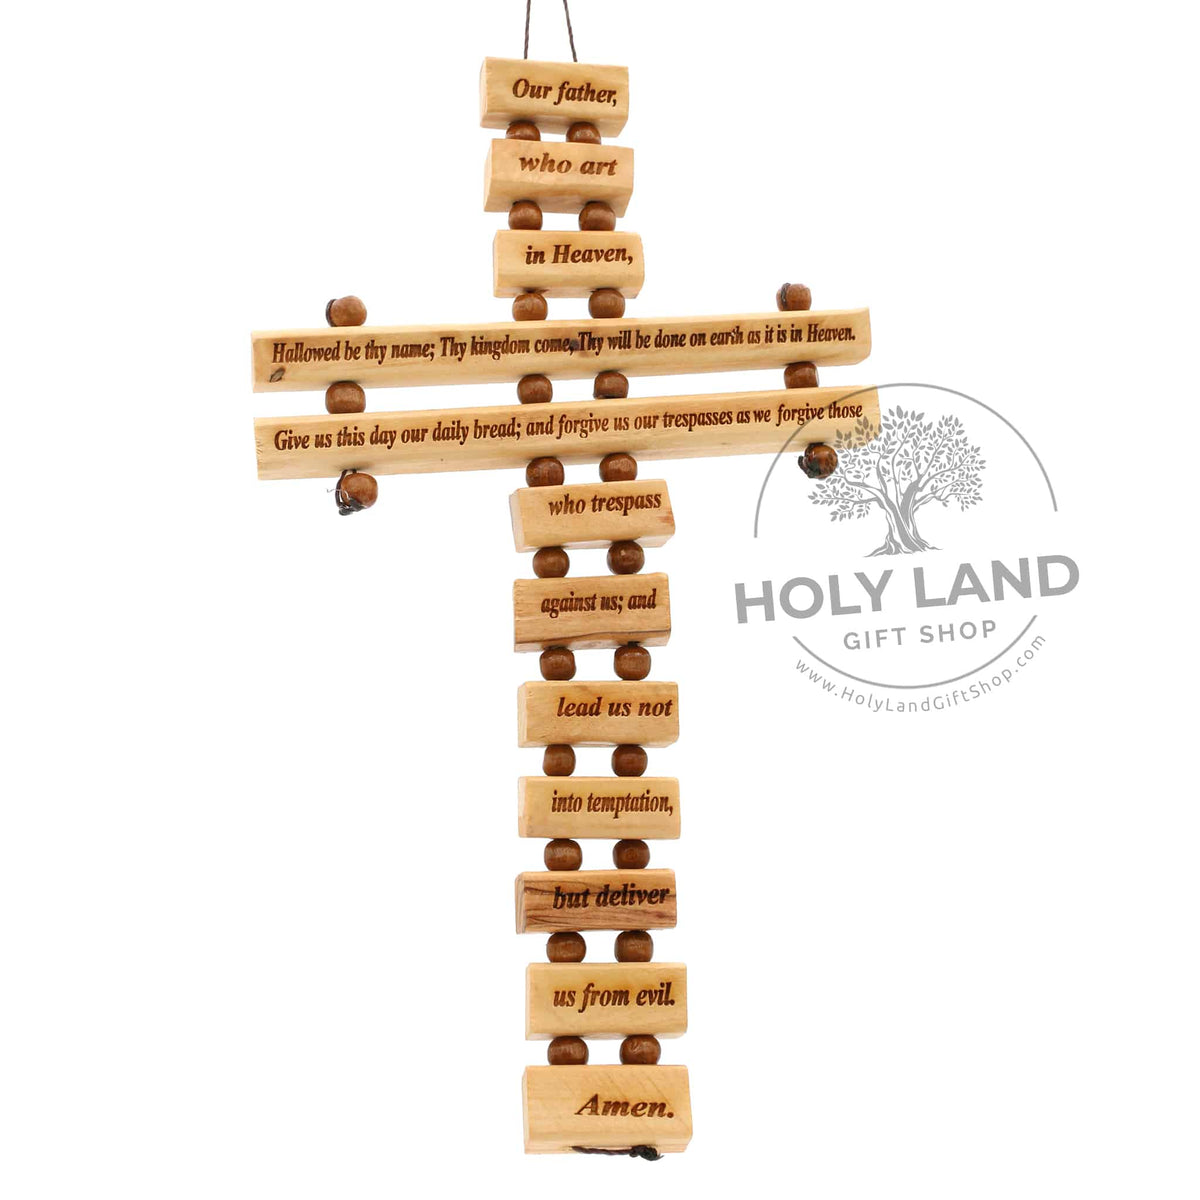 Large Budded, Olive wood Orthodox crosses, made in Bethlehem Holy land